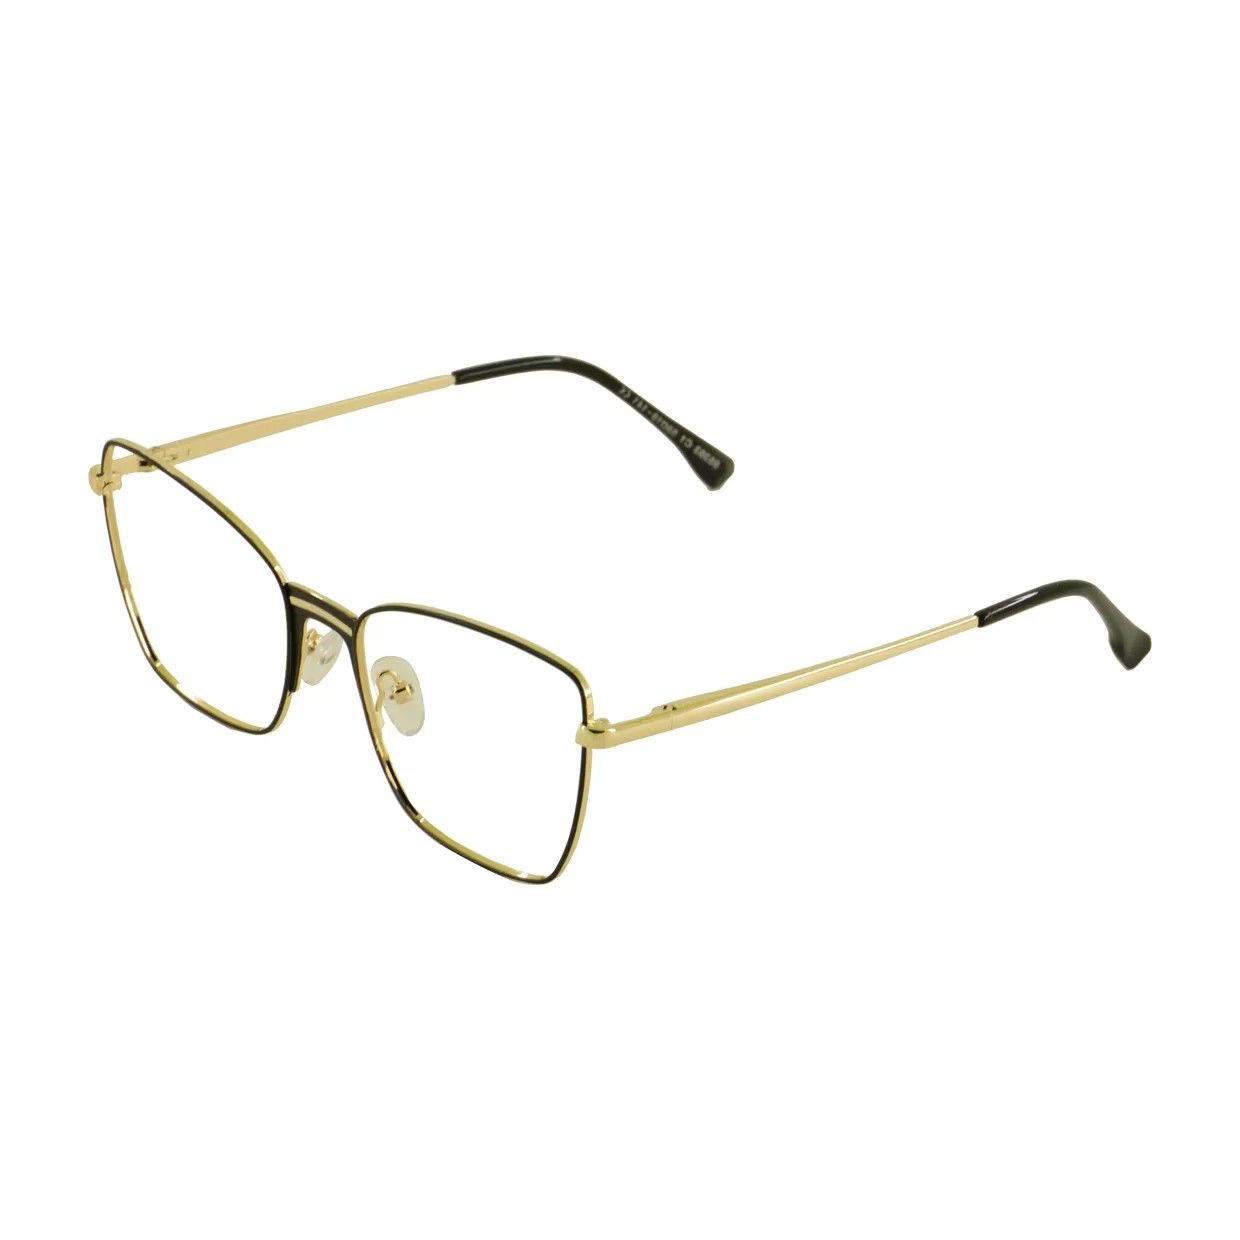 فریم عینک طبی گودلوک مدل 95393 -  - 2